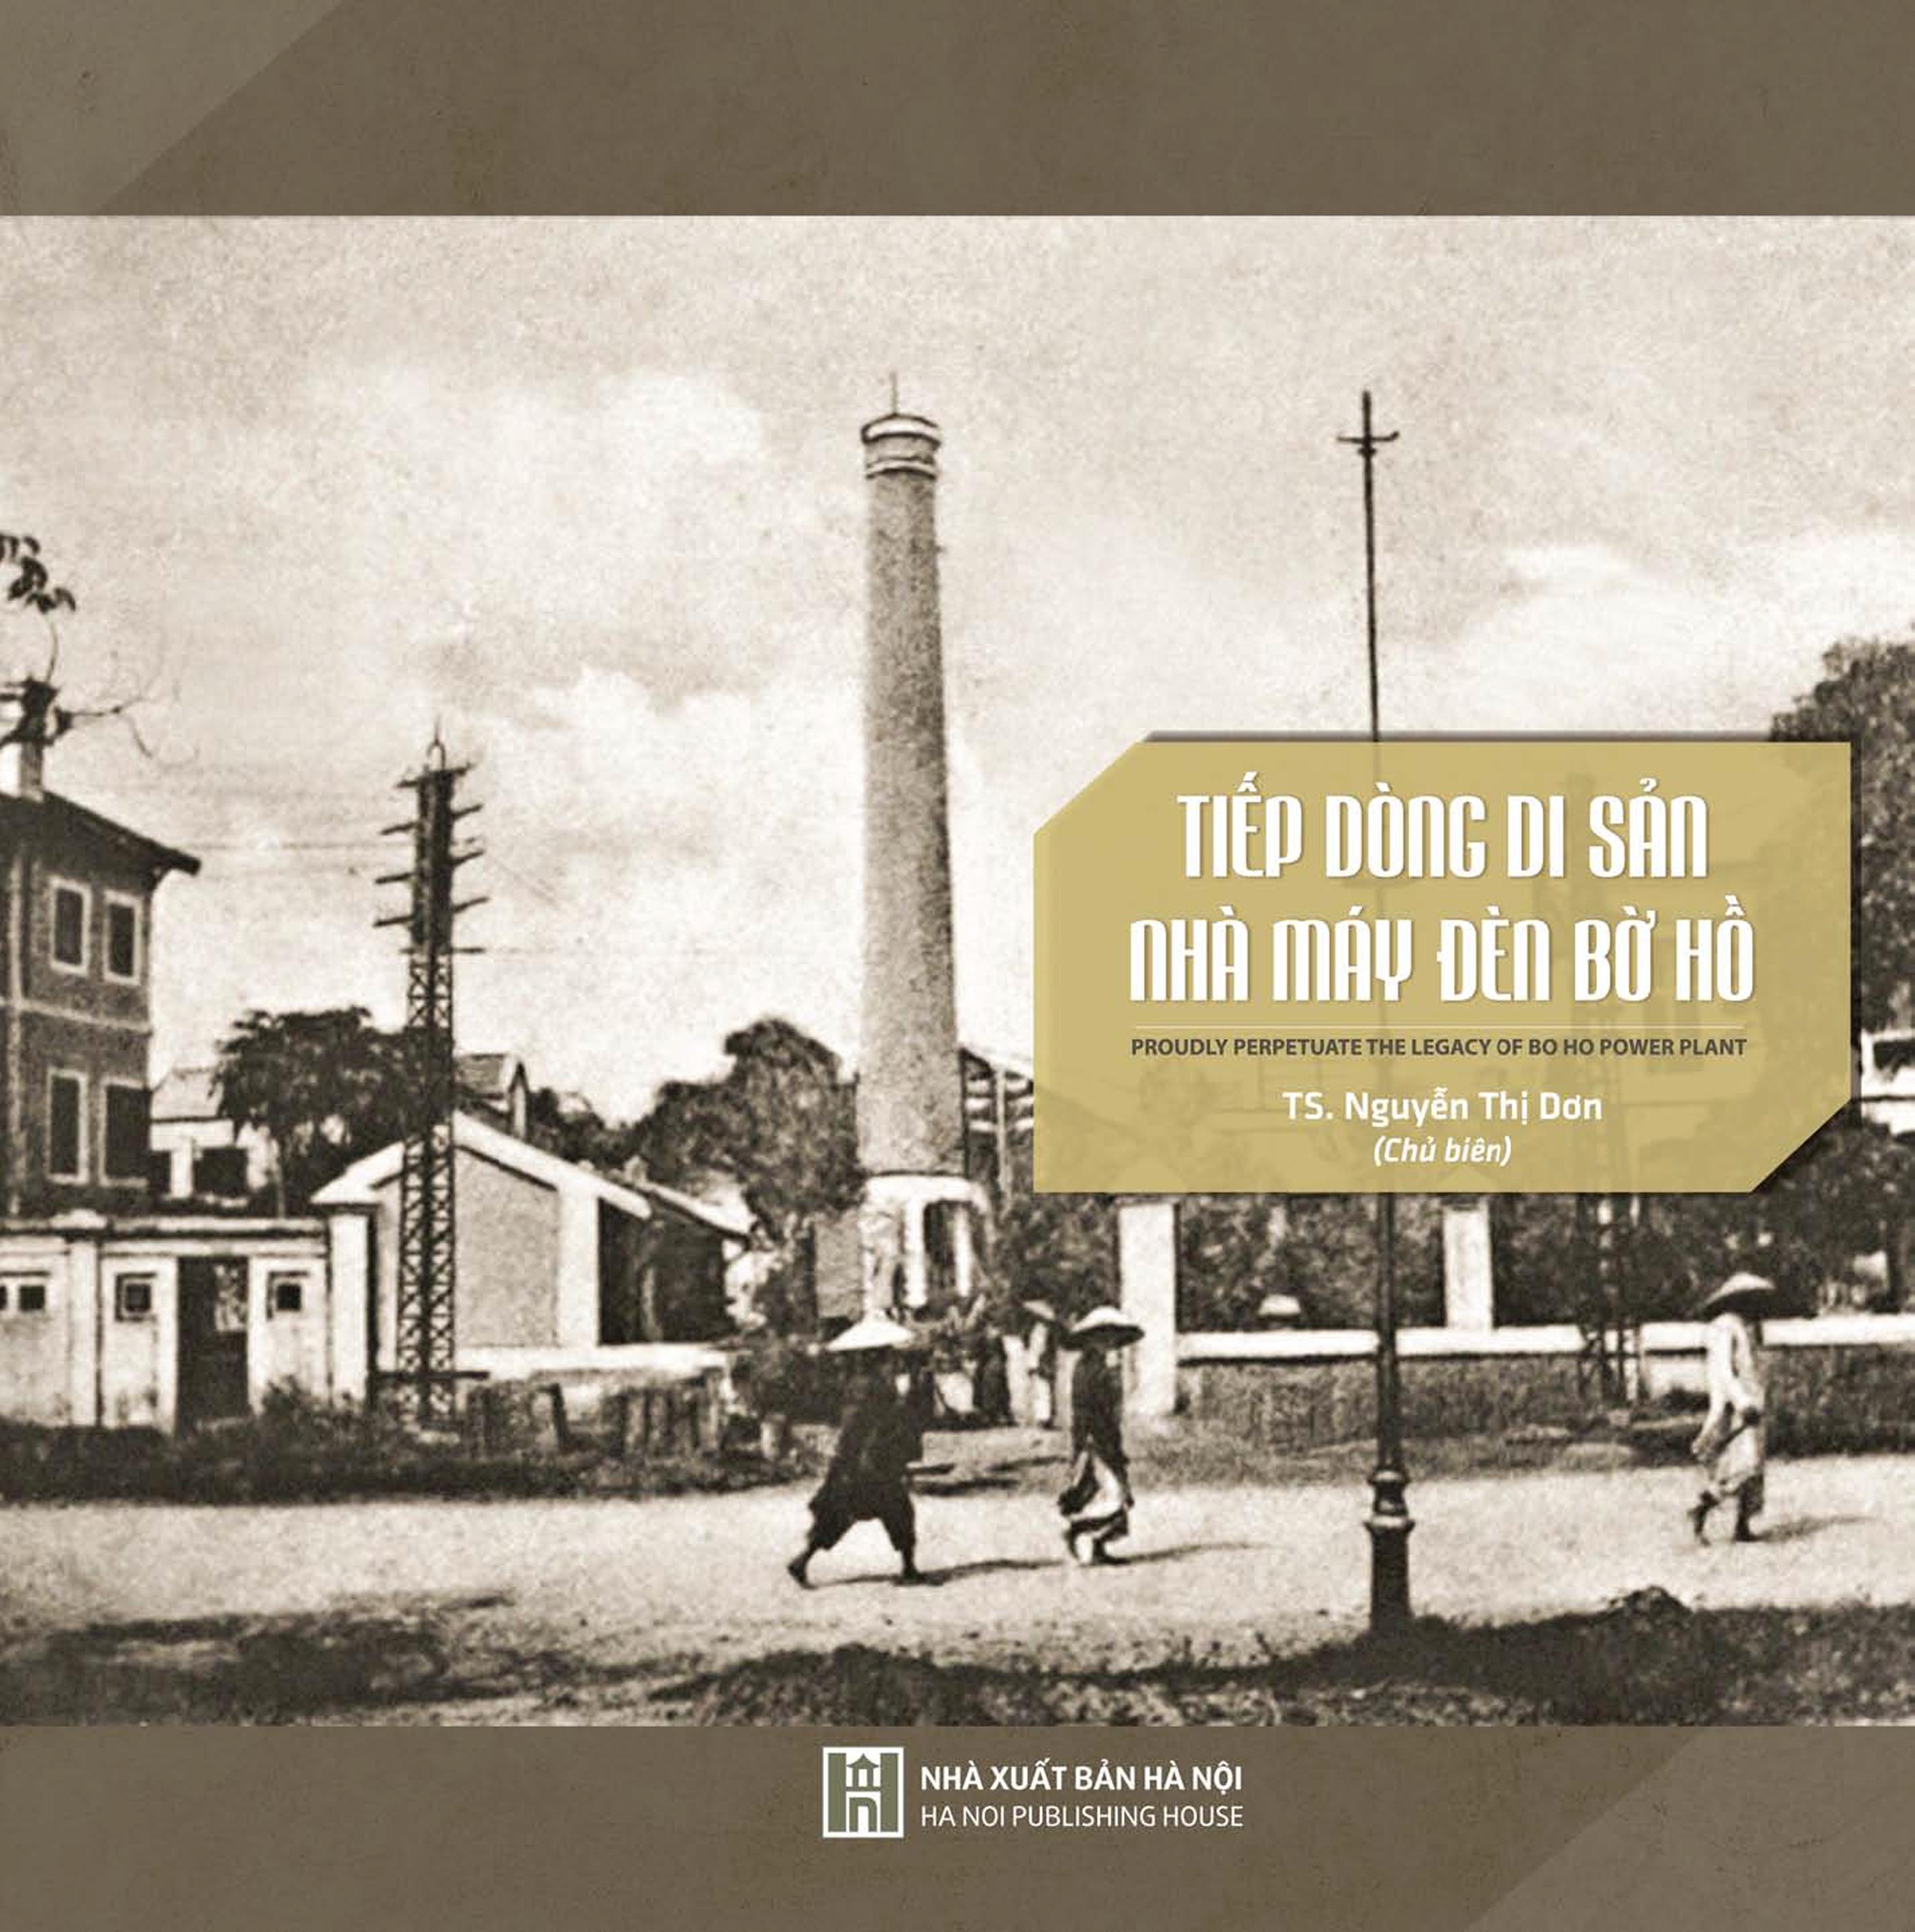 Tiếp dòng di sản Nhà máy đèn Bờ Hồ 
(Proudly perpetuate the legacy of Bờ Hồ Power Plant)